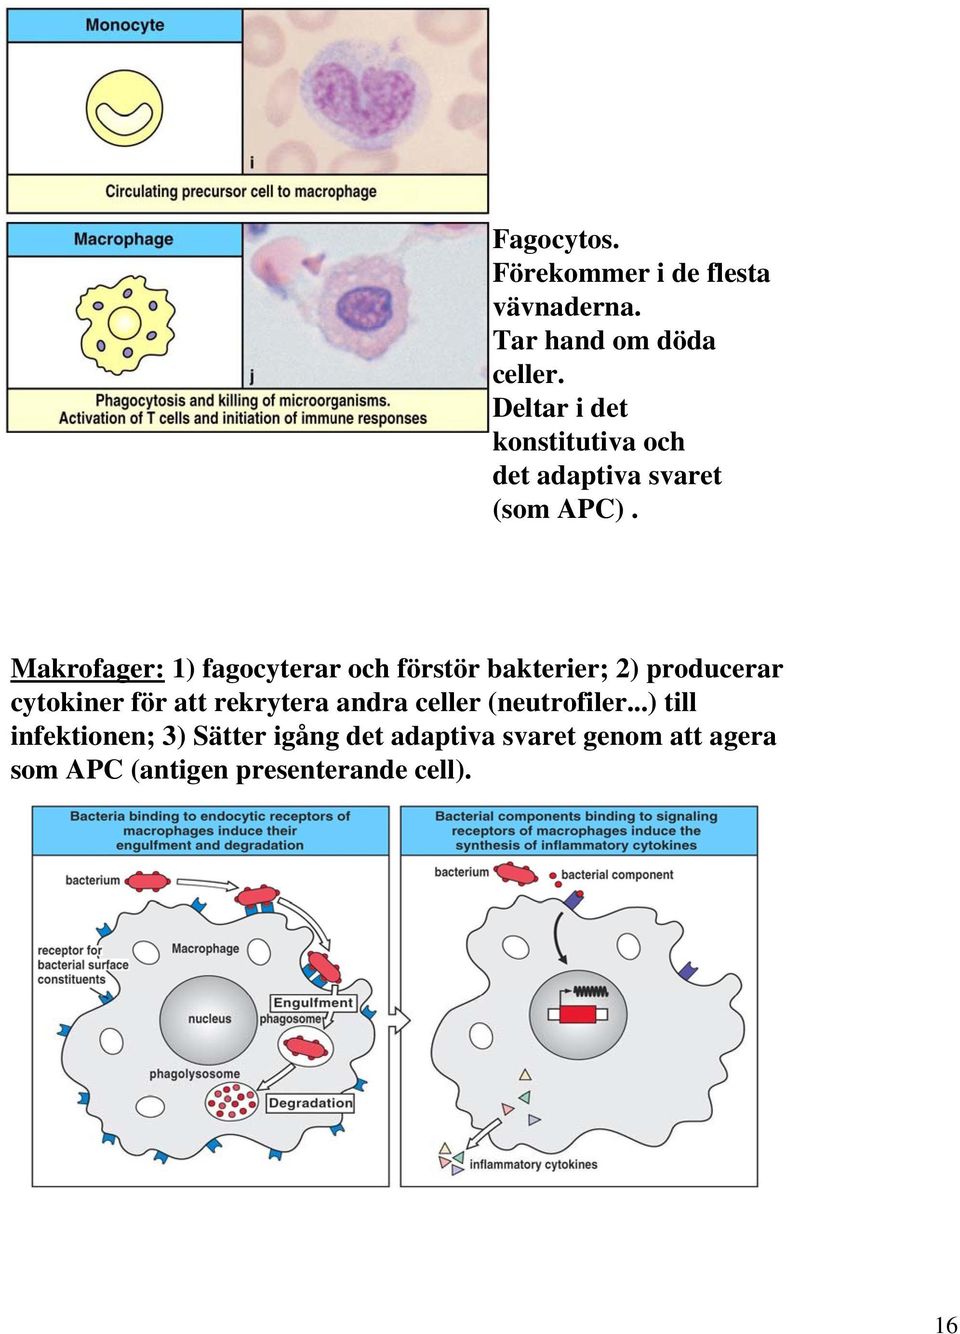 Makrofager: 1) fagocyterar och förstör bakterier; 2) producerar cytokiner för att